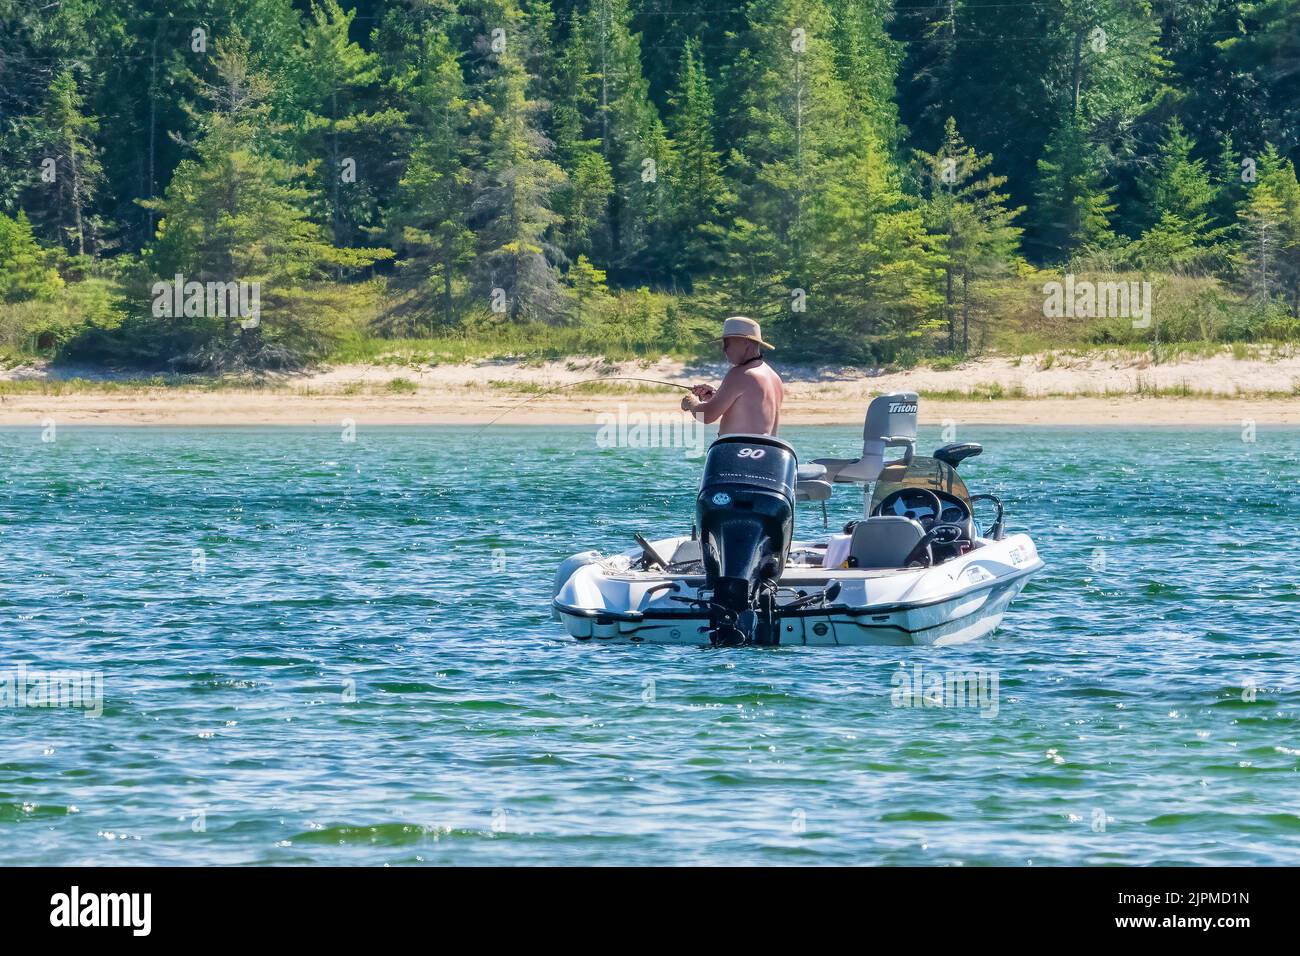 Una delle attrazioni dell'isola di Washington nella contea di Door Wisconsin è la pesca sportiva. Qui un pescatore solista tenta la sua fortuna a Jackson Harbor. Foto Stock